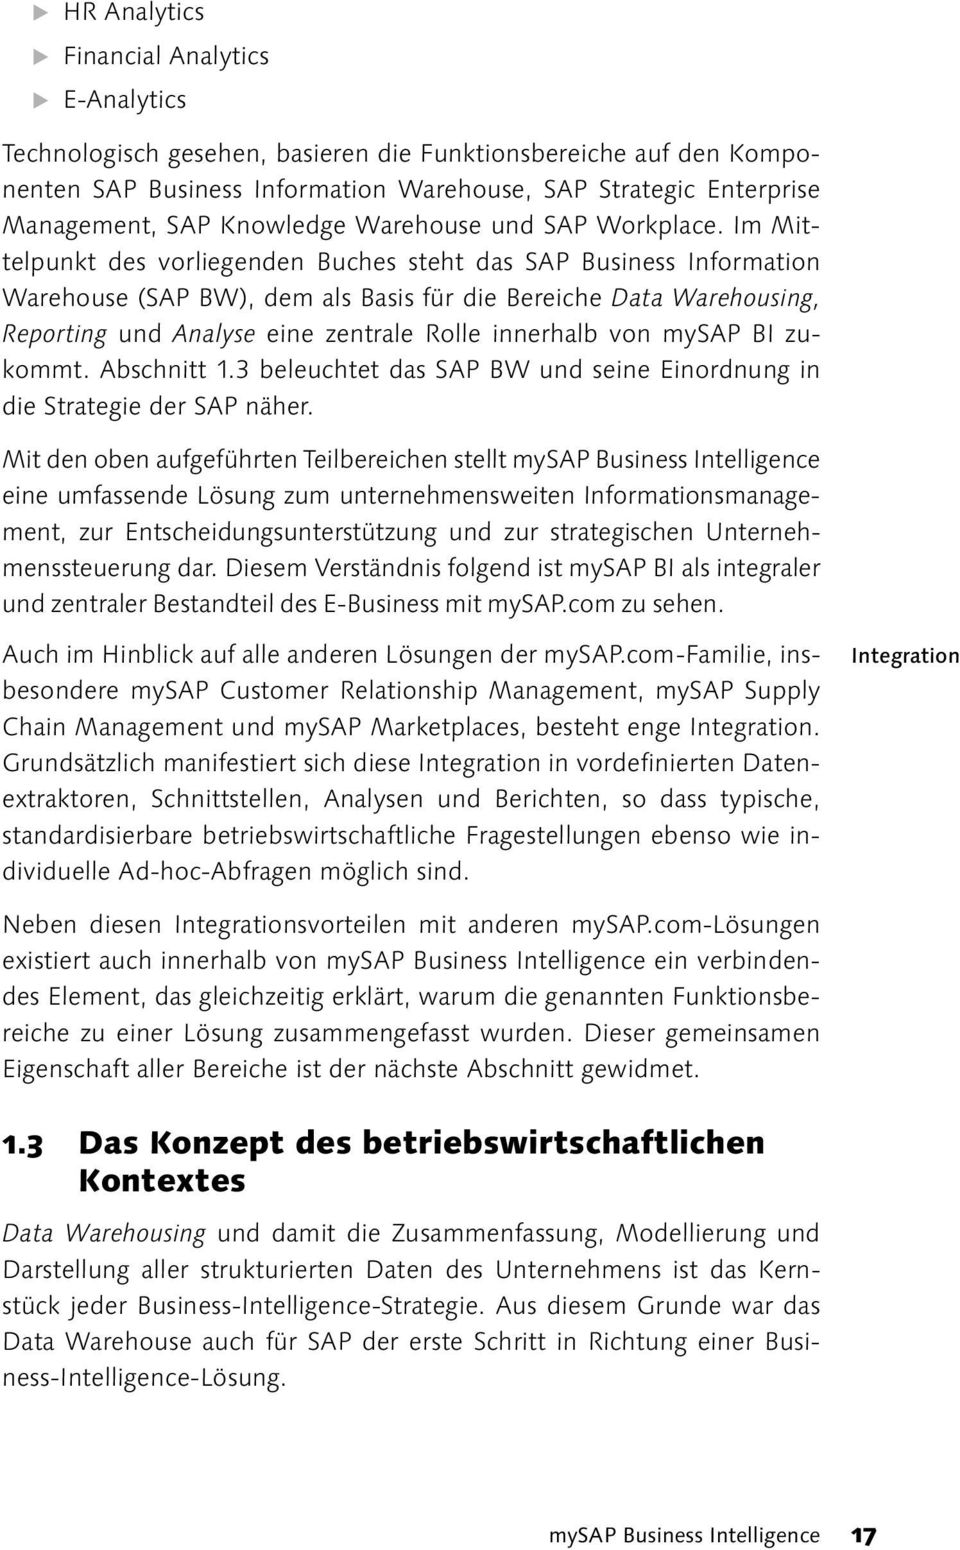 Im Mittelpunkt des vorliegenden Buches steht das SAP Business Information Warehouse (SAP BW), dem als Basis für die Bereiche Data Warehousing, Reporting und Analyse eine zentrale Rolle innerhalb von